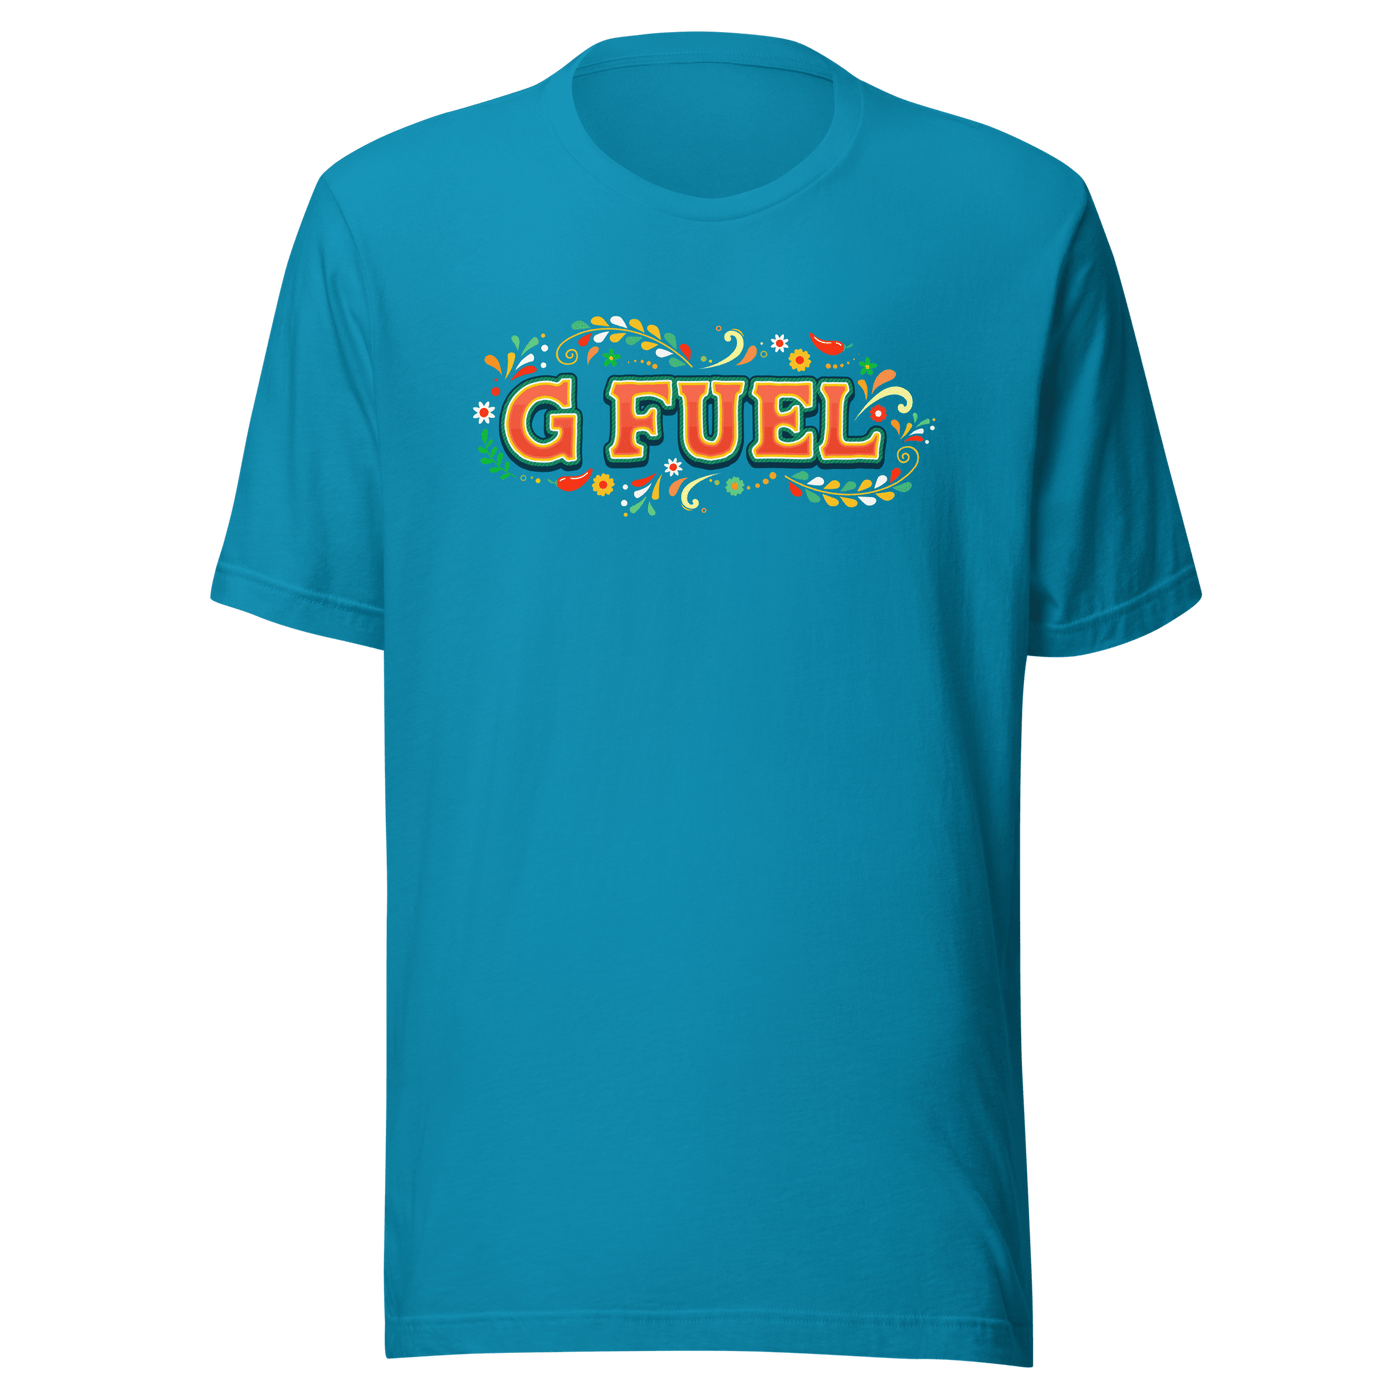 Printful| Fiesta Frenzy T-Shirt Shirt Aqua S 6770768_4021